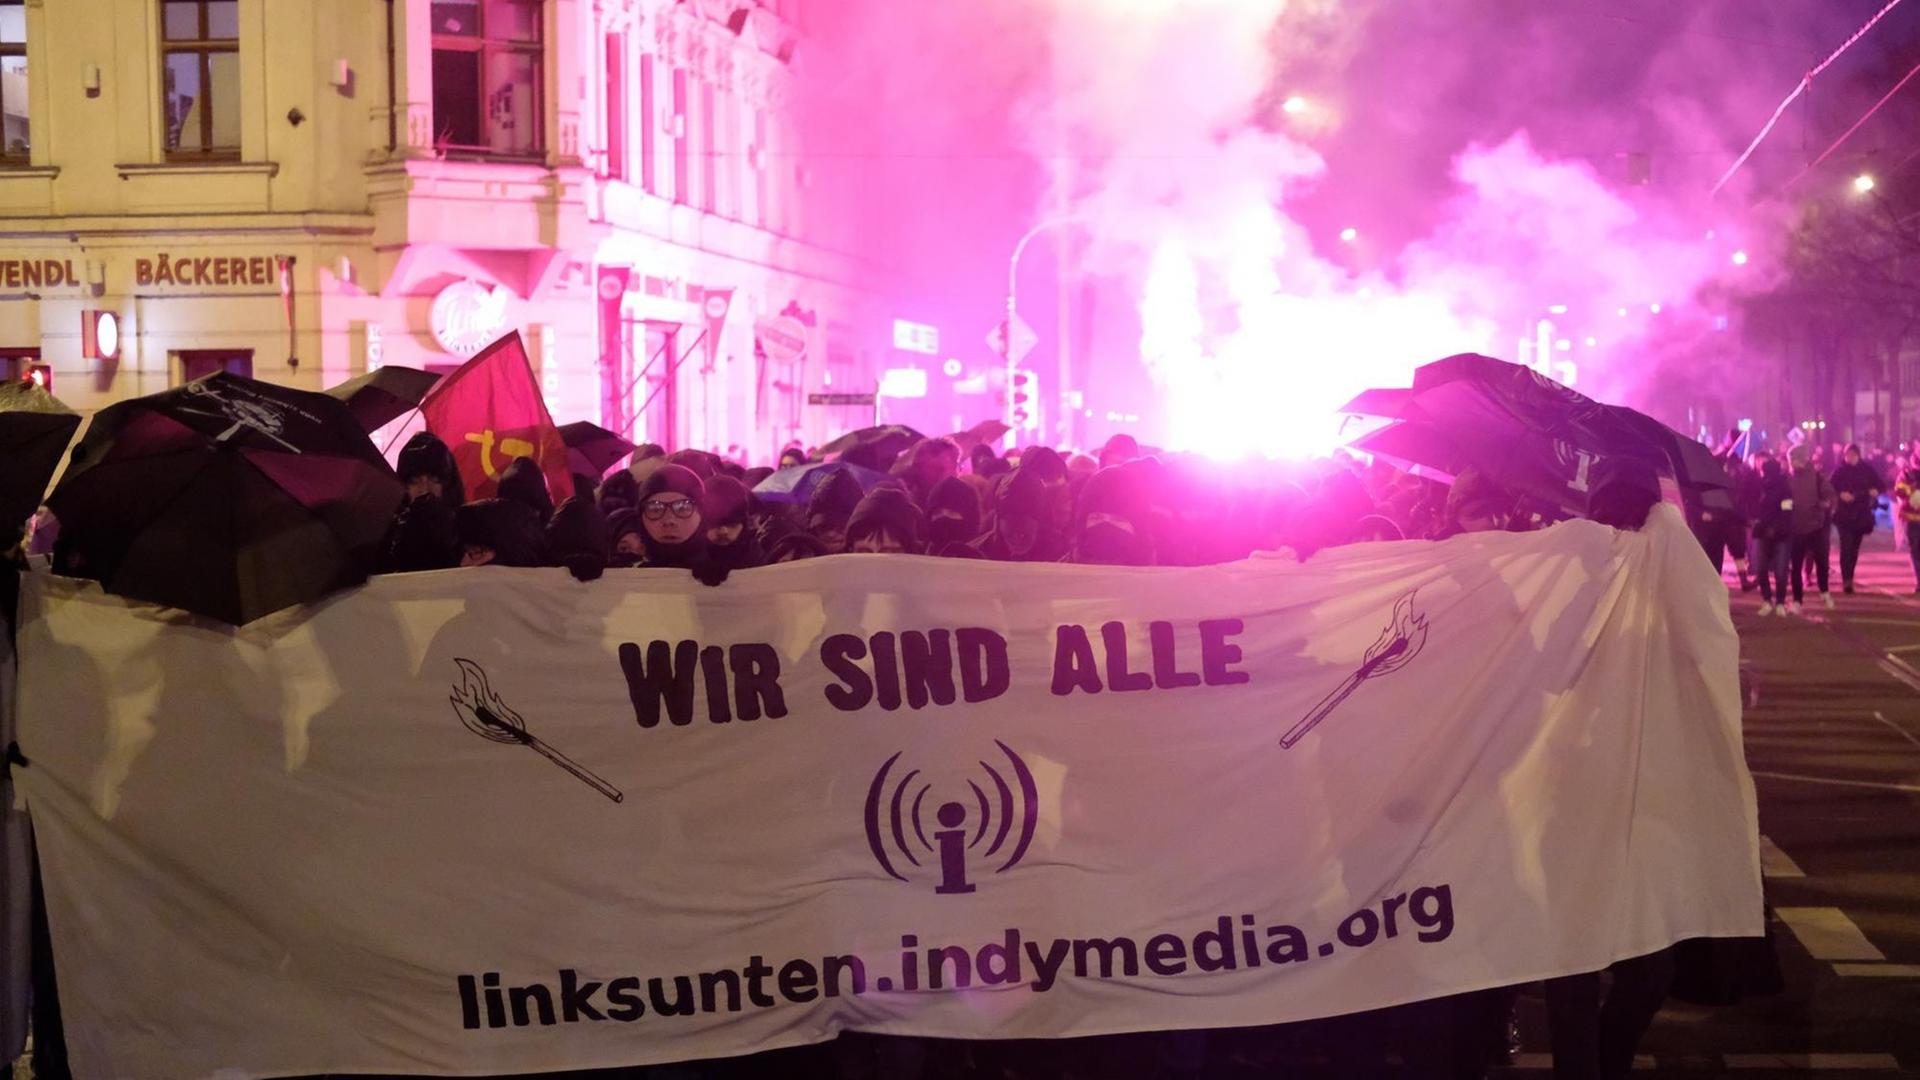 Leipzig: Teilnehmer einer linken Demonstration tragen ein Transparent mit der Aufschrift «wir sind alle linksunten.indymedia.org» und zünden Pyrotechnik. Mehrere hundert Menschen protestierten gegen das Verbot der Plattform «Linksunten.Indymedia».